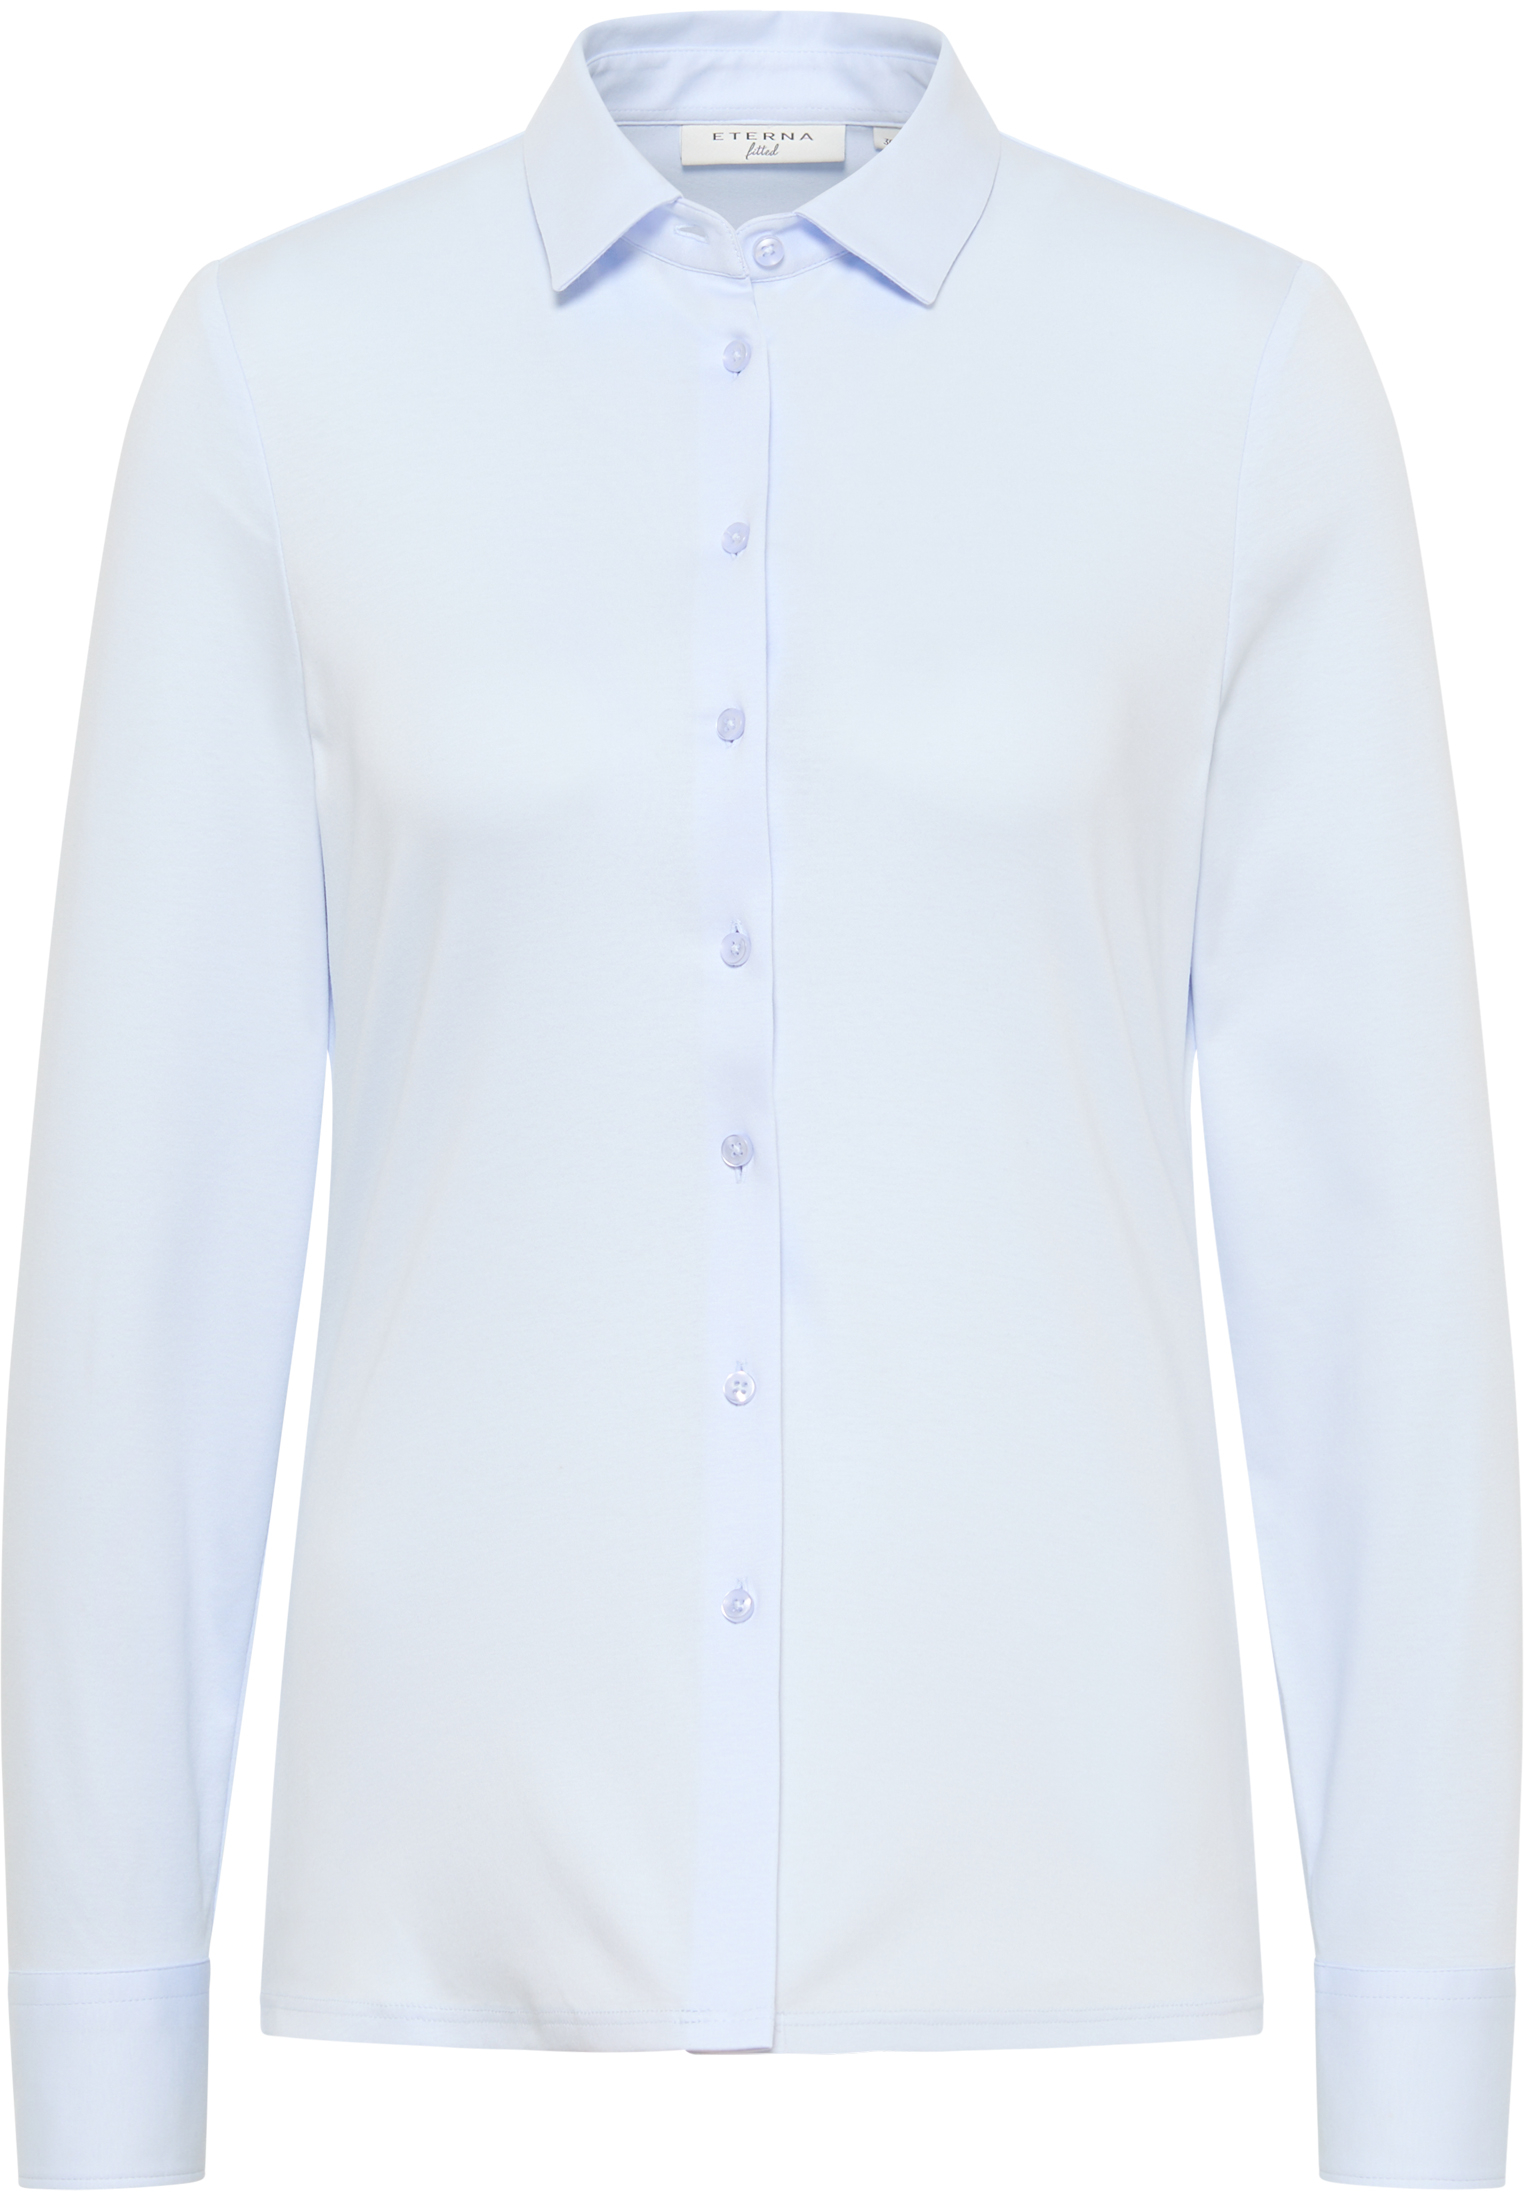 Jersey Shirt Blouse in light blue plain